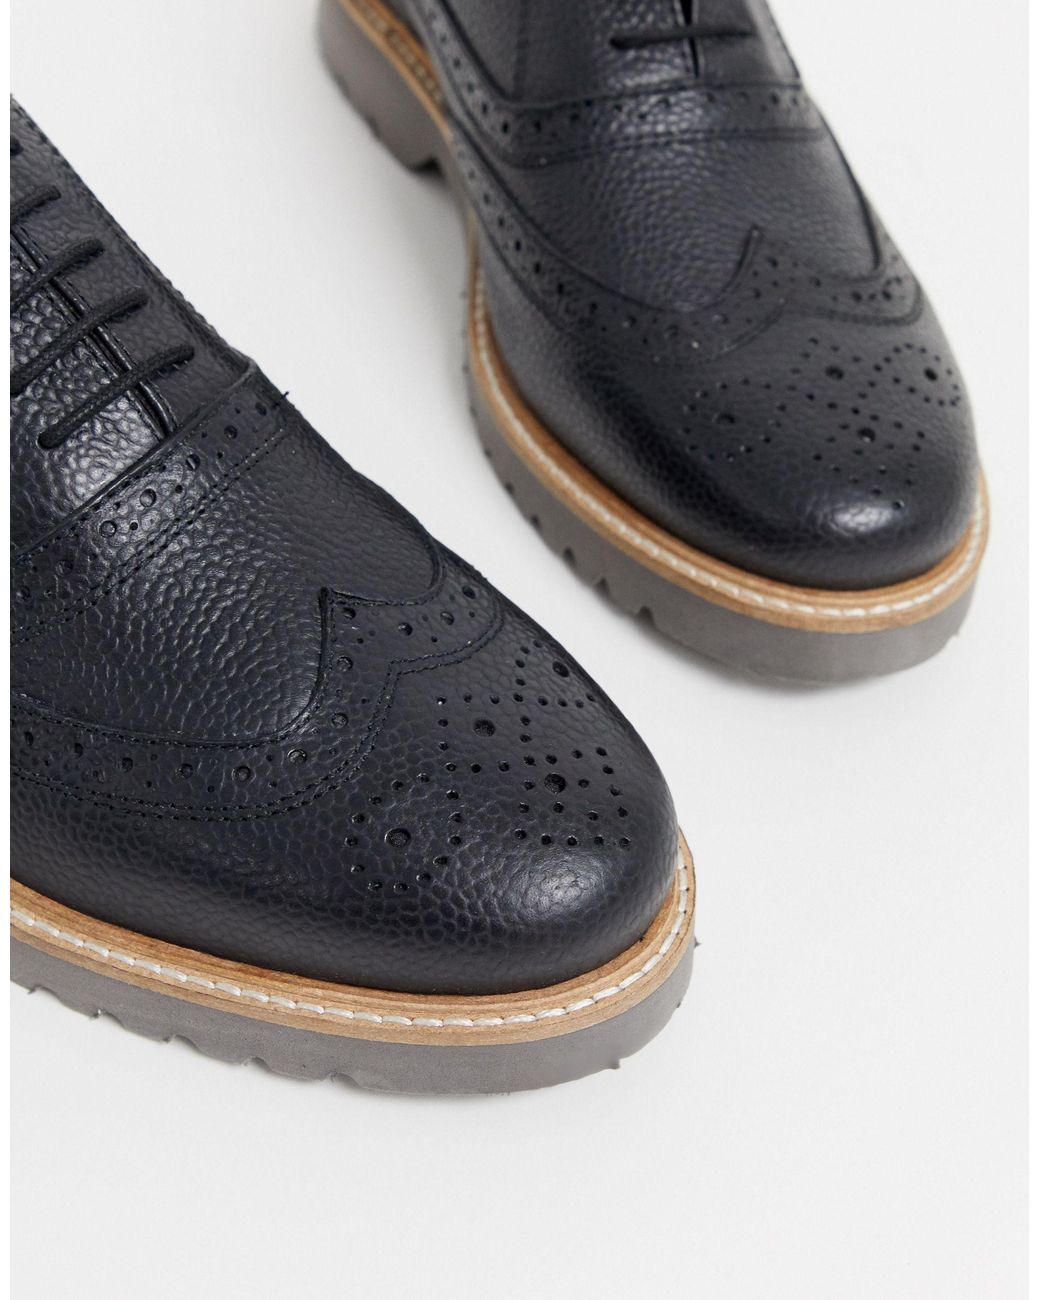 ben sherman black leather shoes